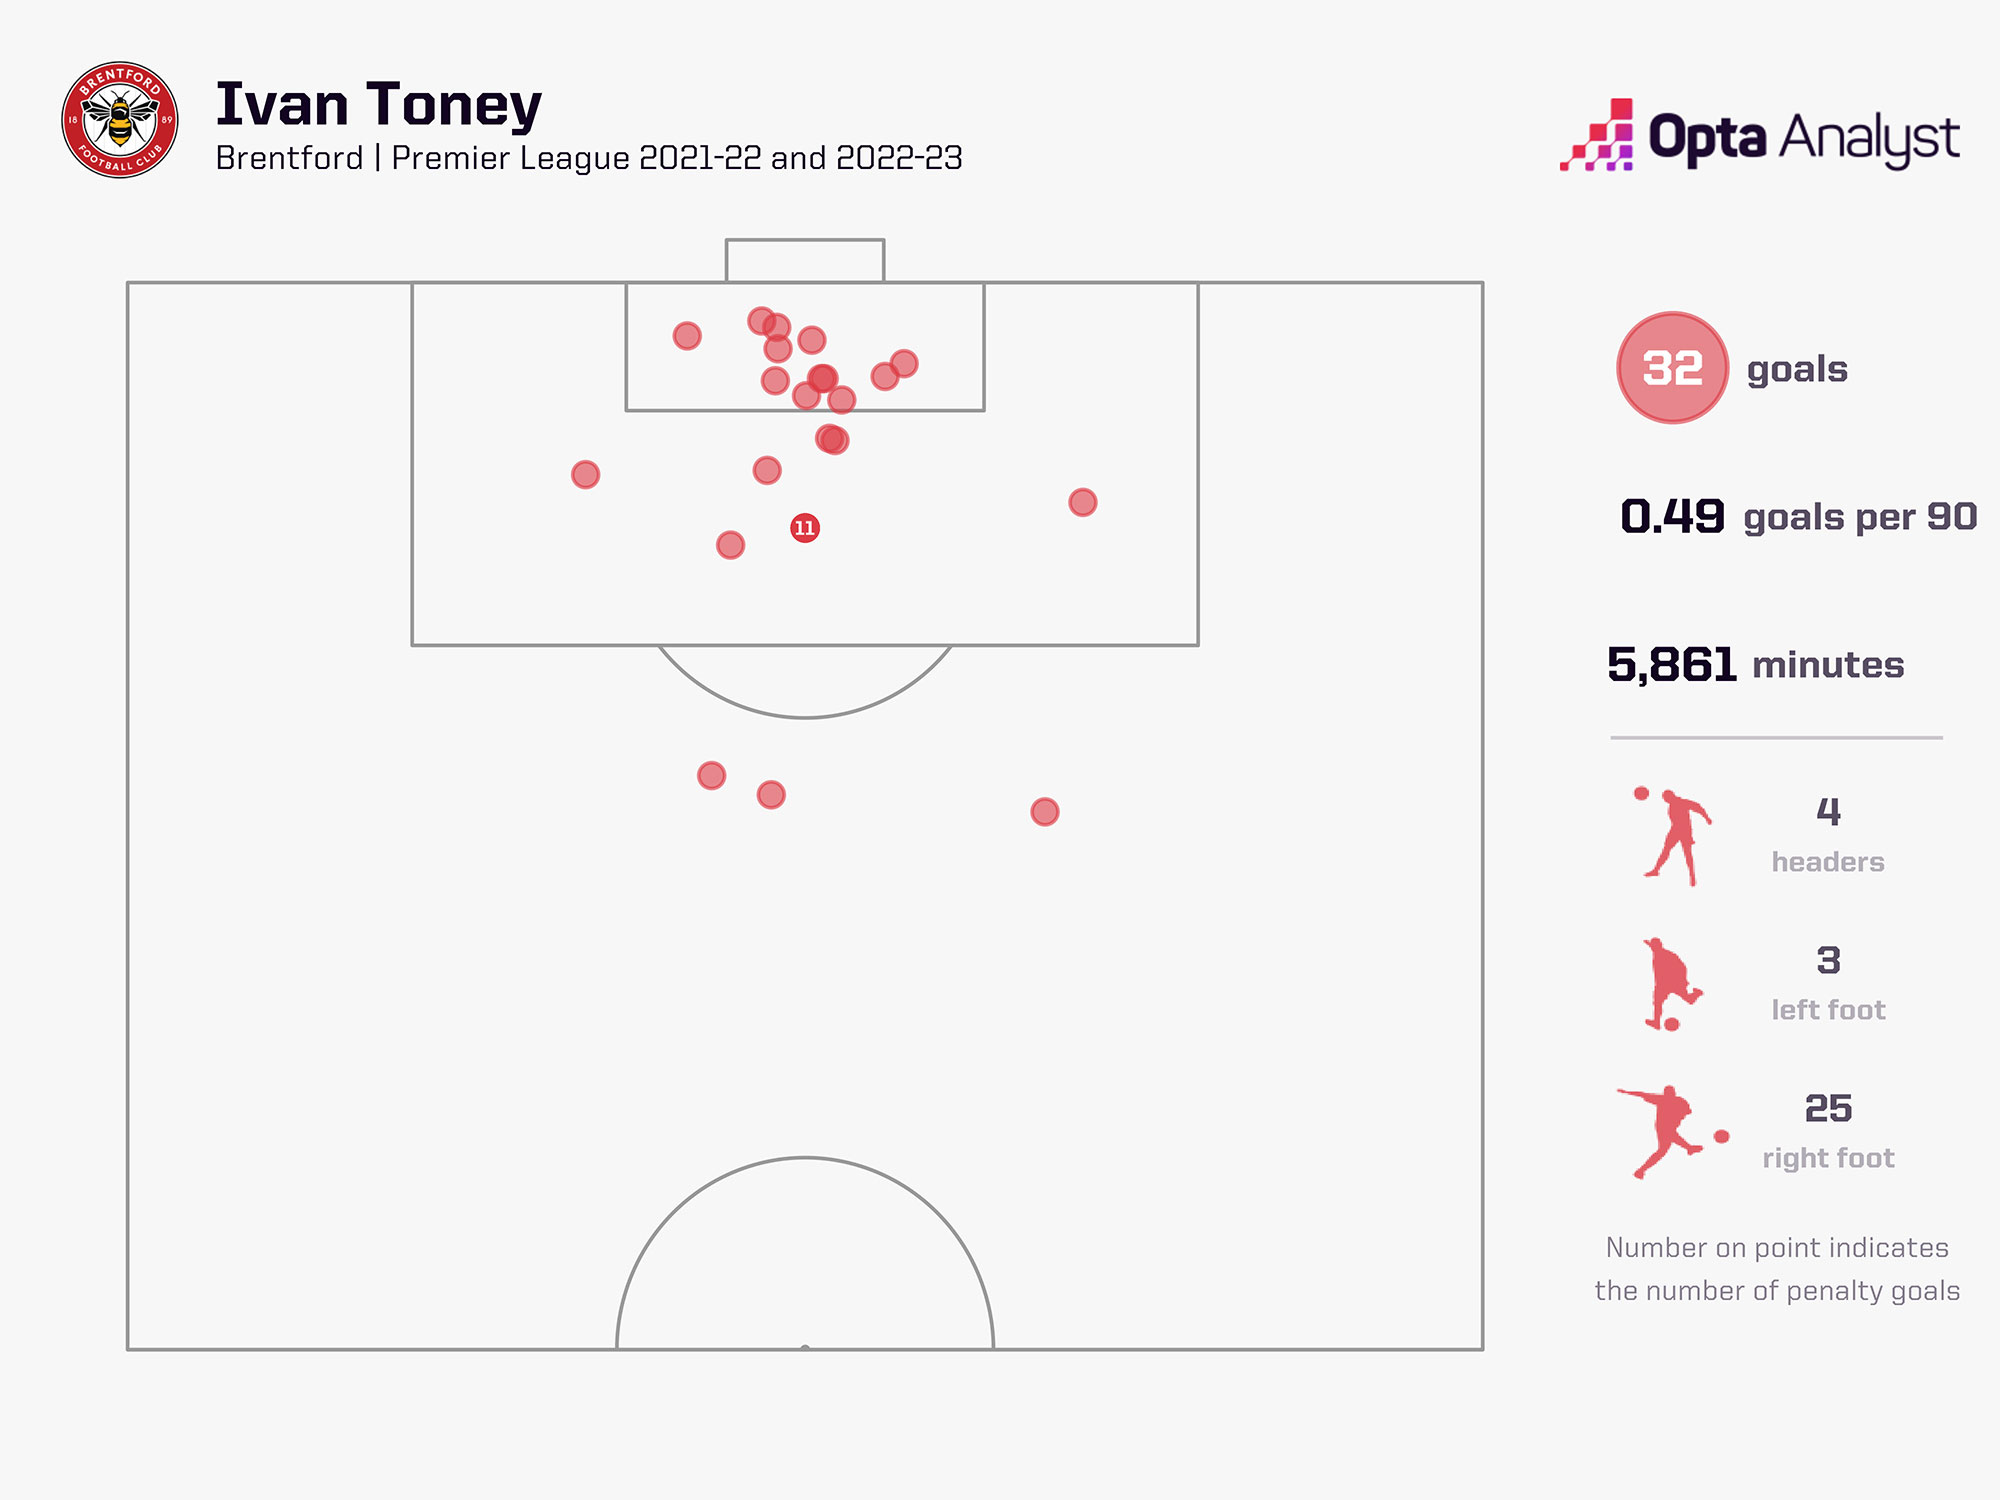 Ivan Toney cho thấy tầm hoạt động rộng cùng khả năng ghi bàn ấn tượng. Ảnh: Opta Analyst. 